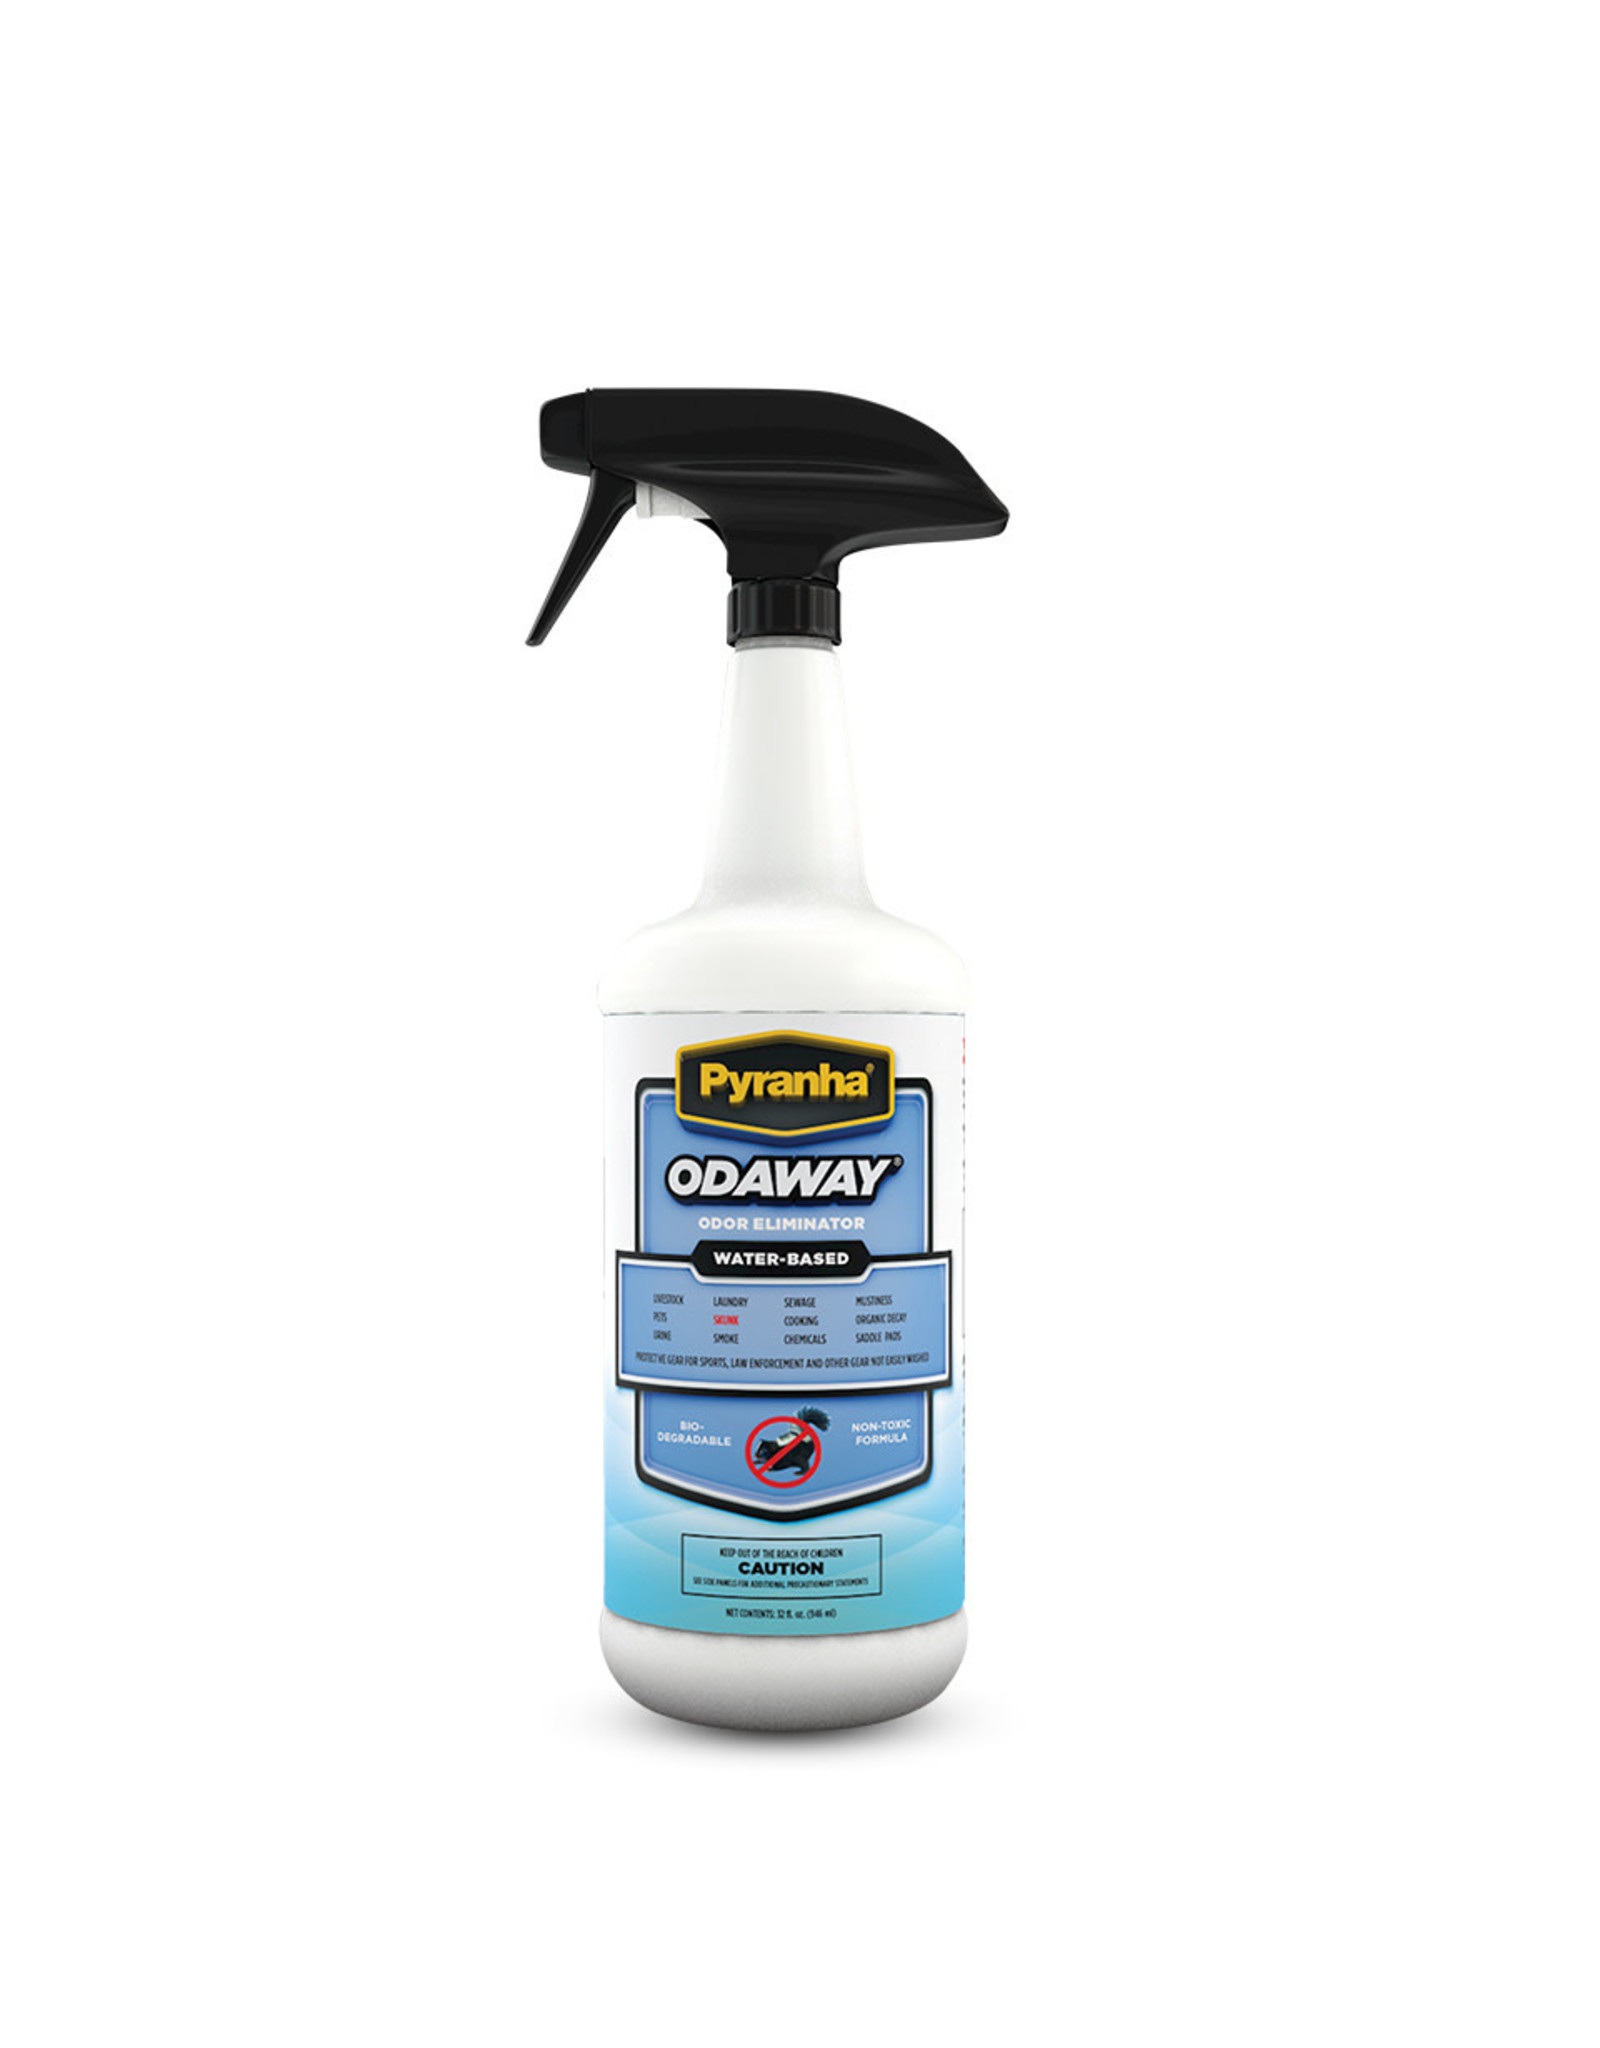 Odaway Odor Absorber Spray 32 oz